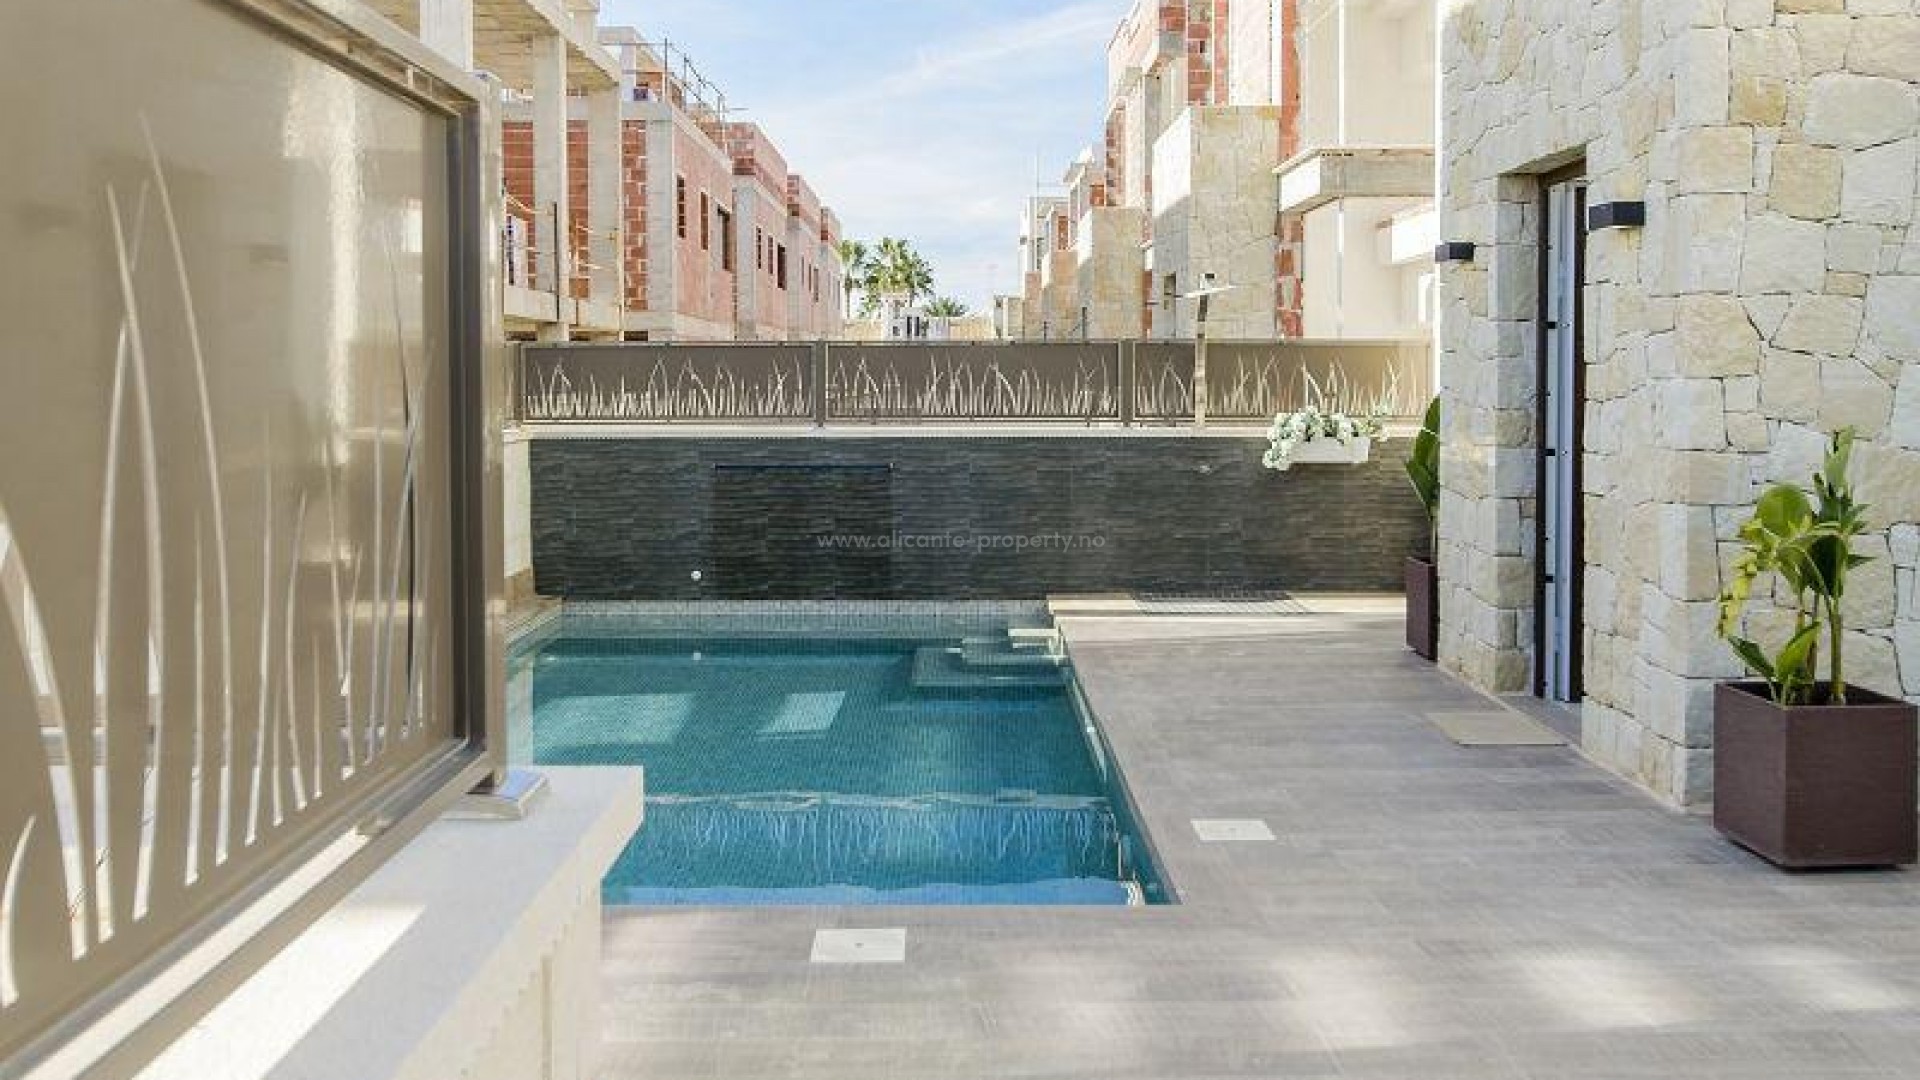 Frittliggende luksus-villa i Ciudad Quesada, 3 soverom, 3 bad, hage med 6,5x3,3 svømmebasseng med farget lys, stor terrasse